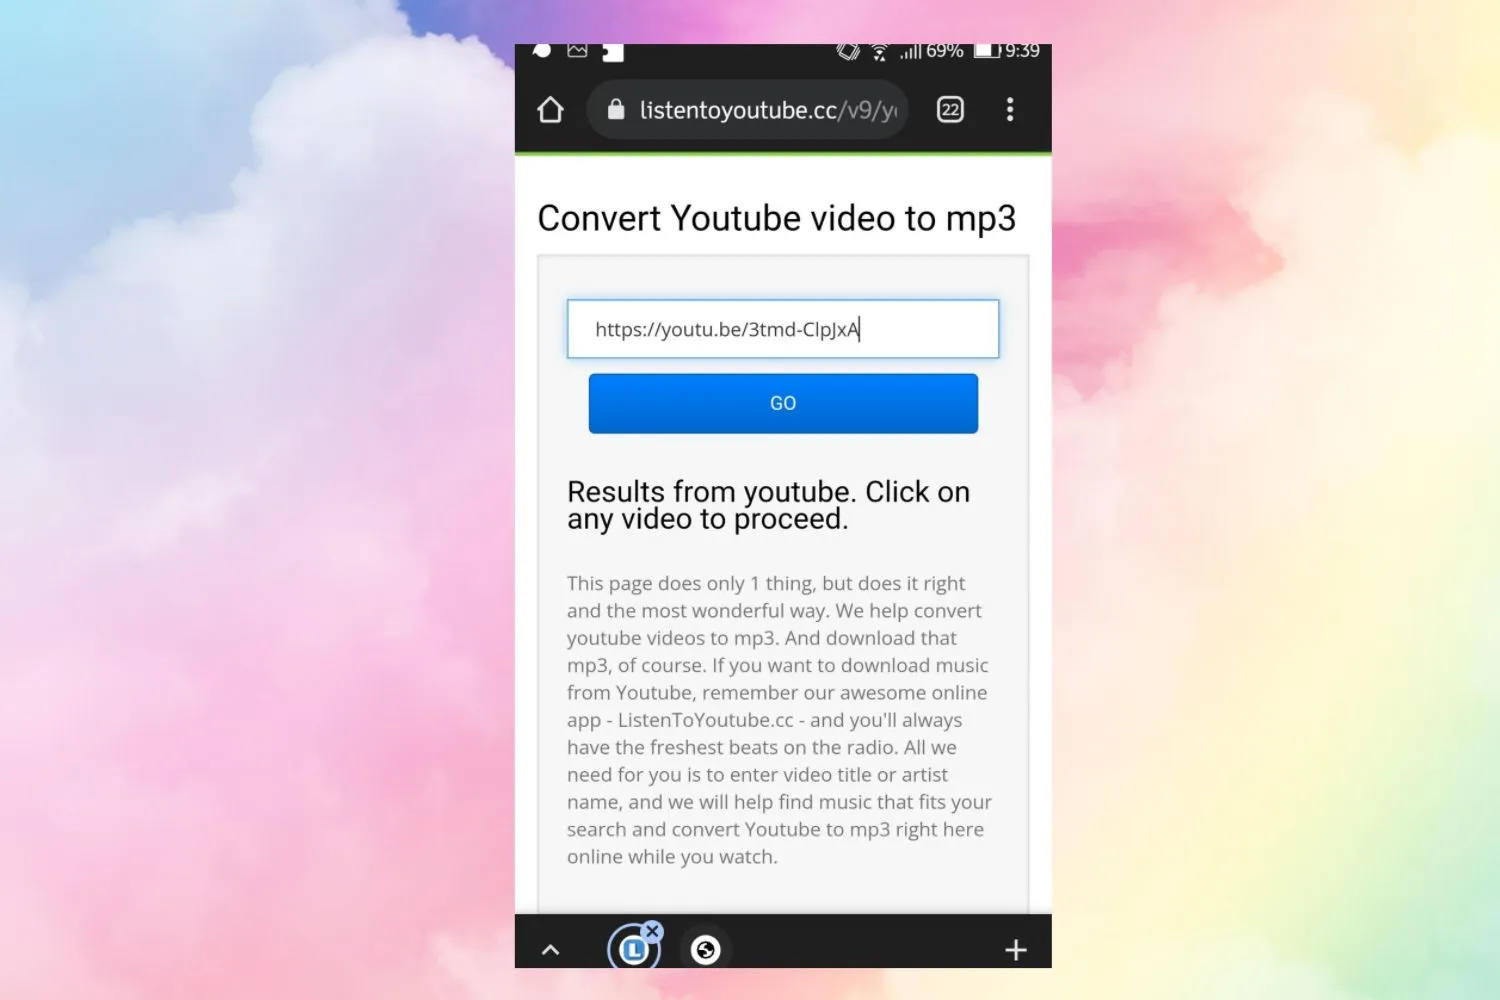 Sforum - Trang thông tin công nghệ mới nhất 3-33 Cách tải nhạc MP3 từ Youtube về điện thoại Android chỉ trong 1 phút 